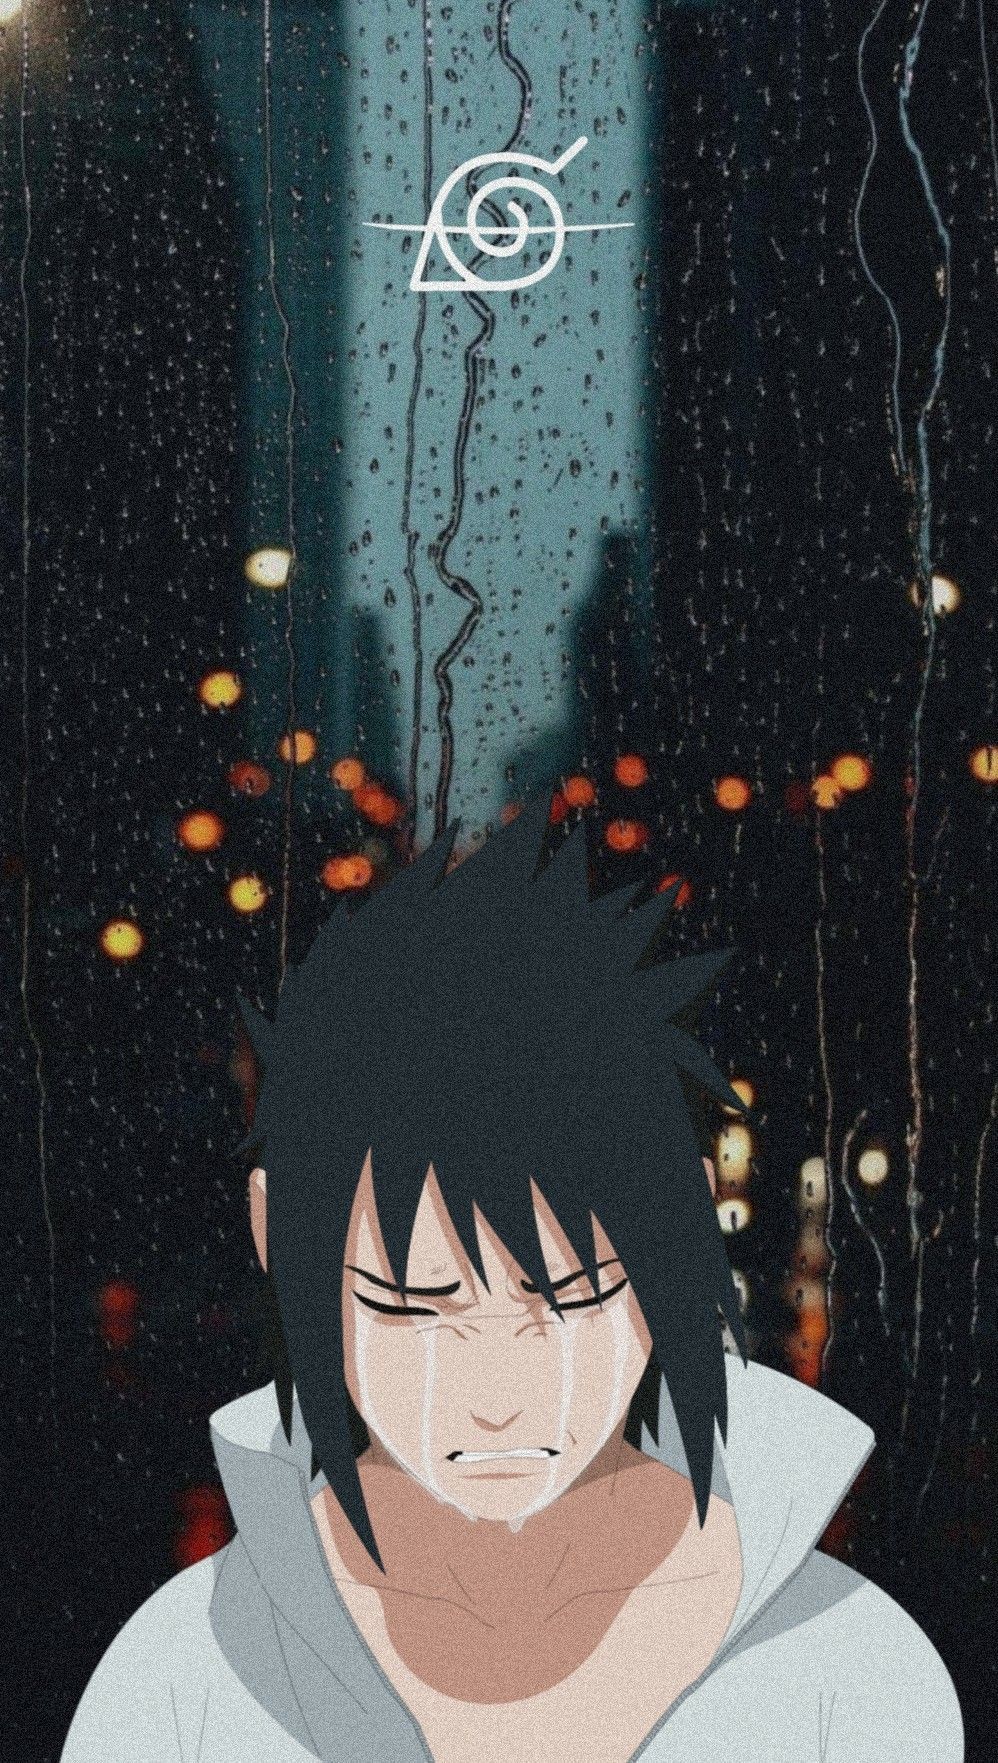 Sad sasuke phone wallpaper I made for my phone! - Sasuke Uchiha